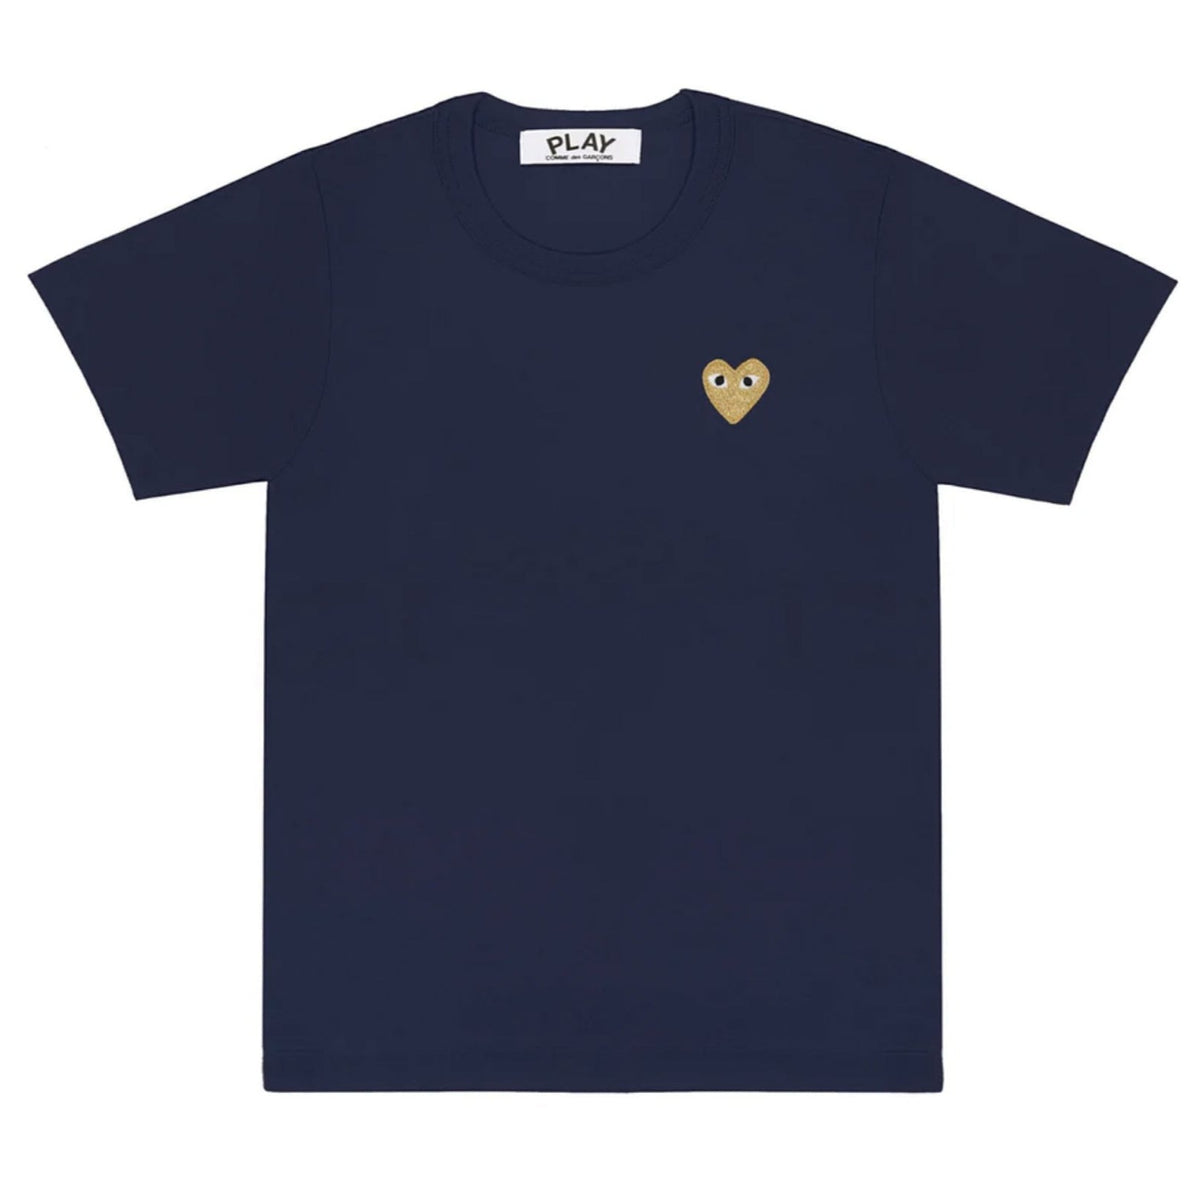 PLAY T-Shirt Damen navy gold Herz